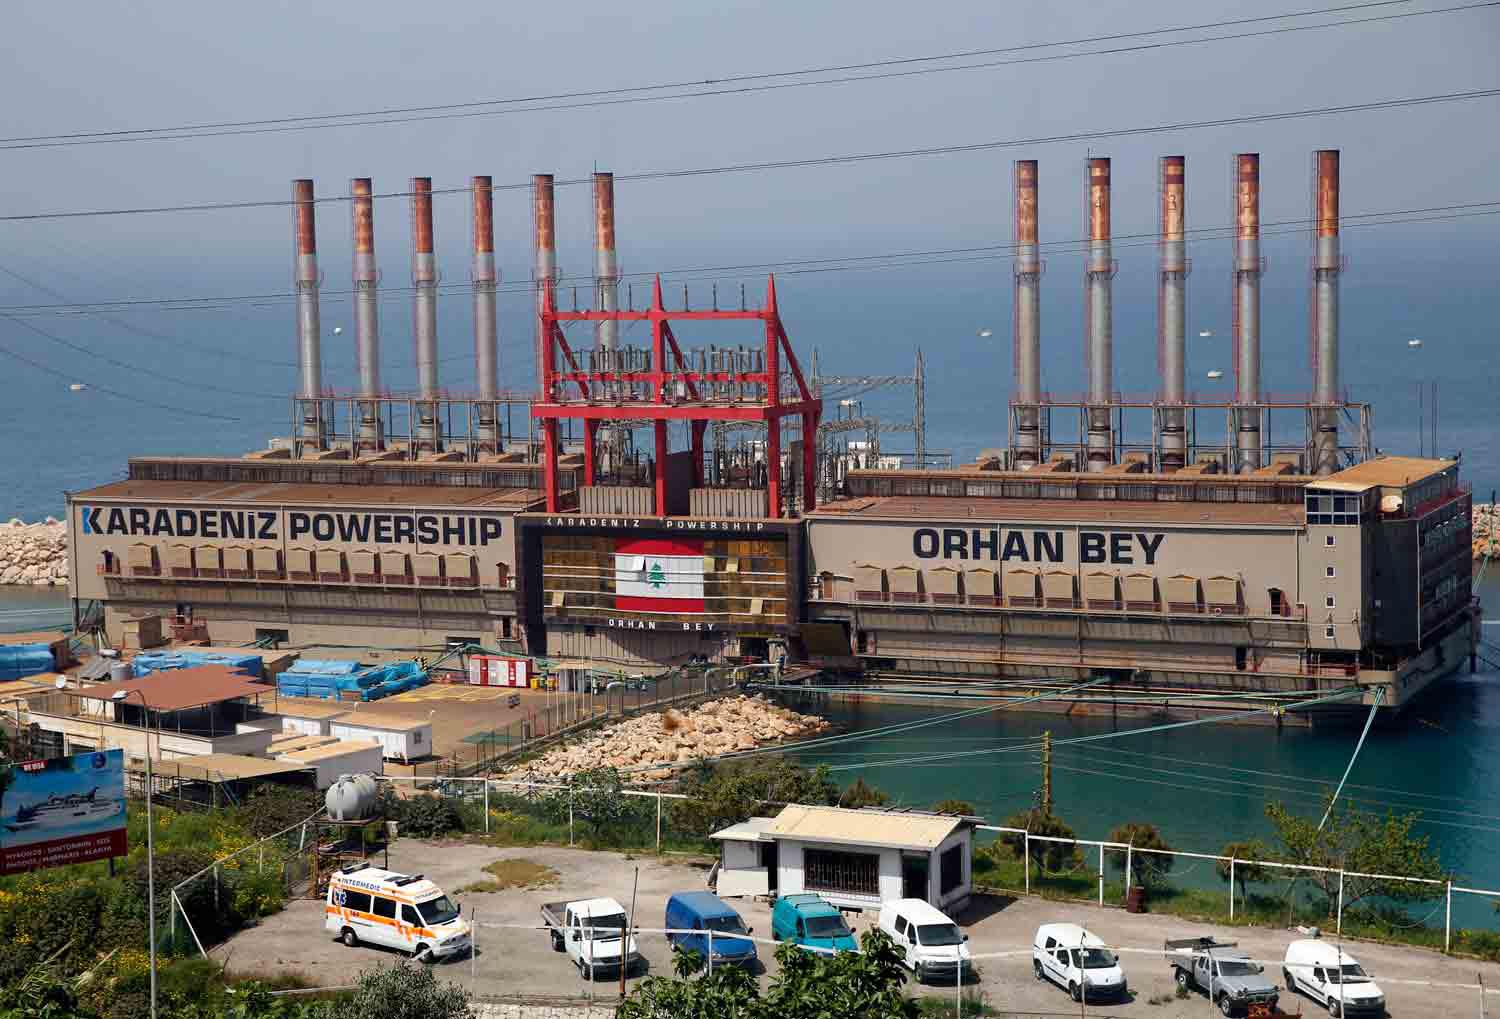 السفن التركية التي توفر الكهرباء في البلاد  تثير جدلا بين اللبنانيين